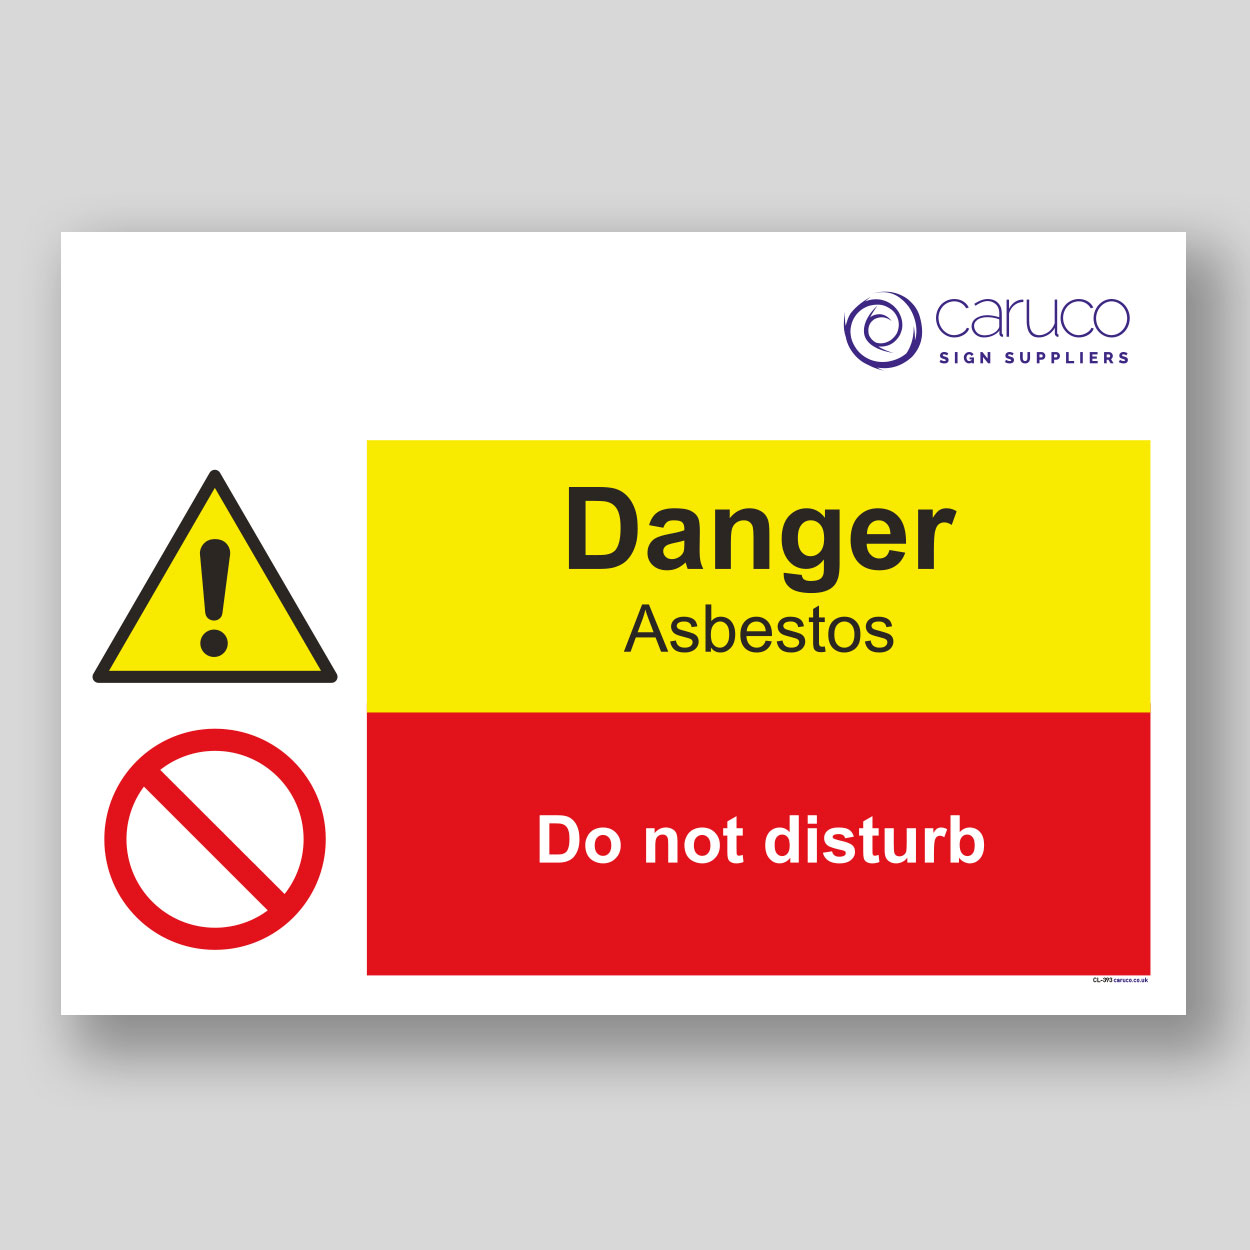 CL-393 Danger asbestos - do not disturb